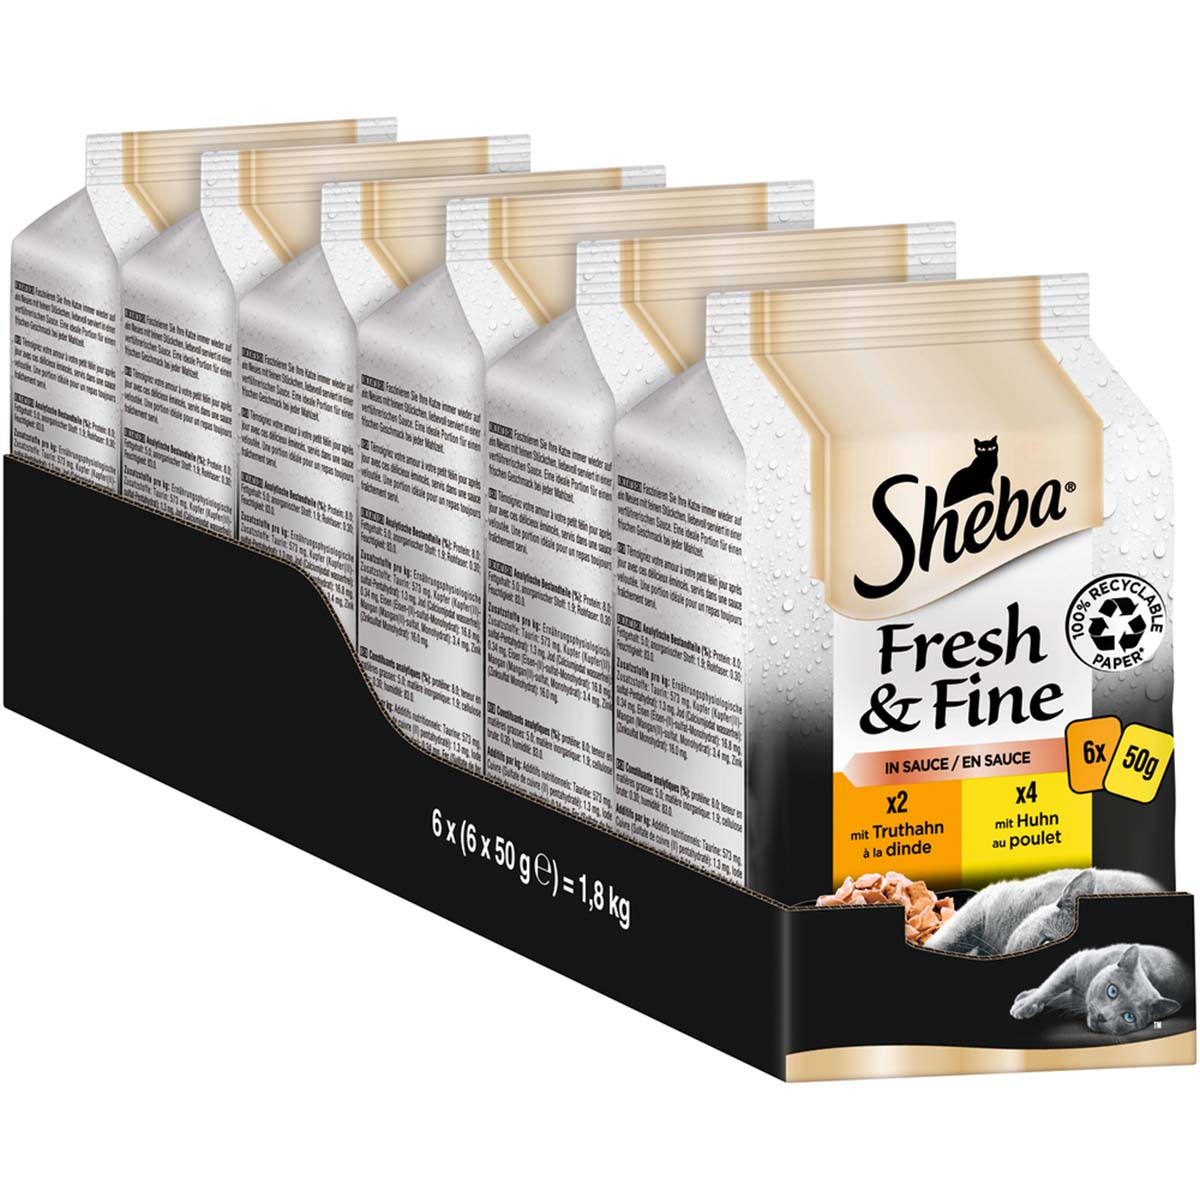 Sheba Fresh & Fine in Sauce mit Huhn & Truthahn 36x50g von Sheba